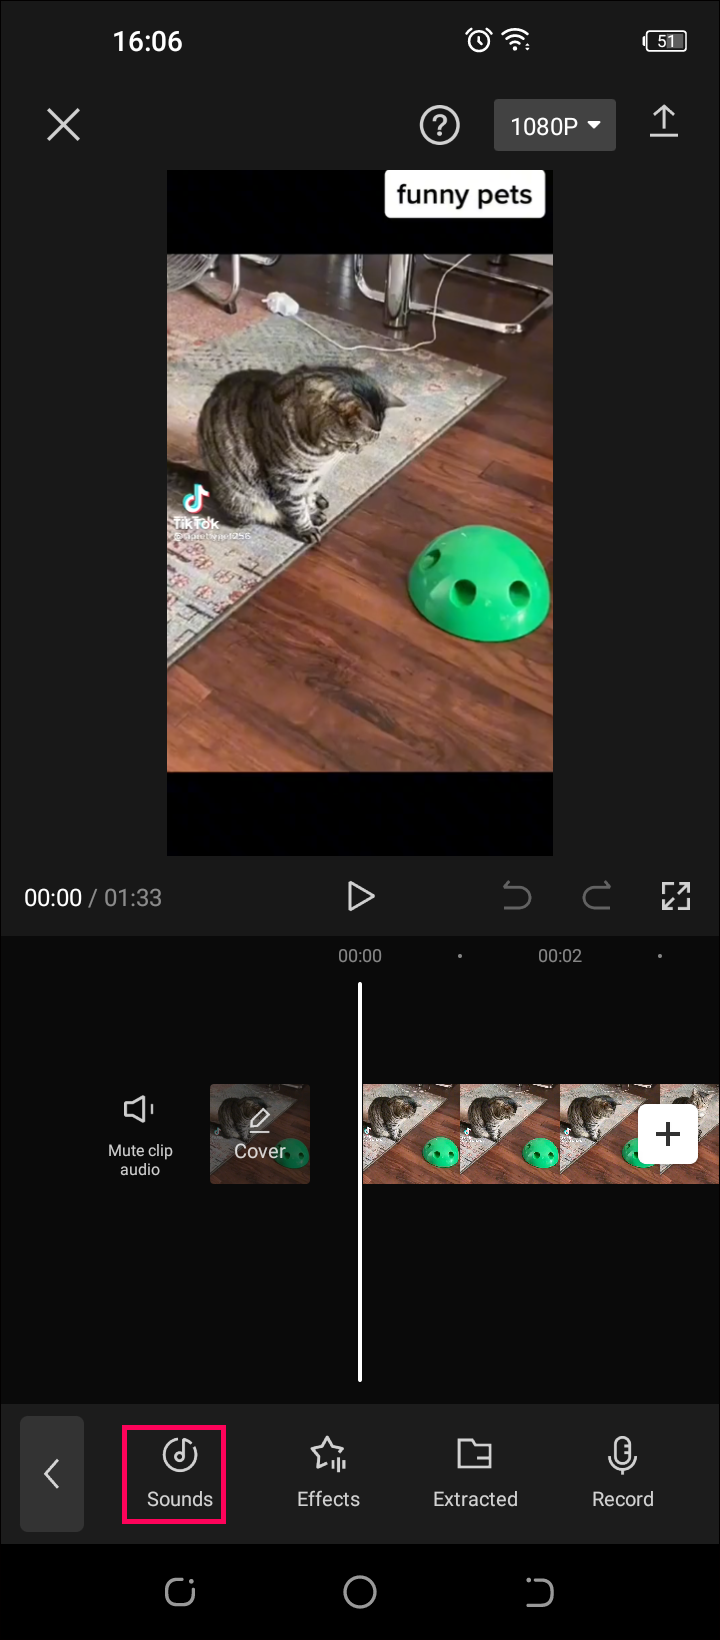 Việc thêm phông nền đôi khi có thể làm cho video của bạn trở nên thú vị hơn. CapCut là một ứng dụng chỉnh sửa video được yêu thích và được sử dụng rộng rãi trên toàn thế giới. Hãy theo dõi hướng dẫn cách thêm phông nền trong CapCut để tạo nên các video đẹp và chuyên nghiệp hơn.